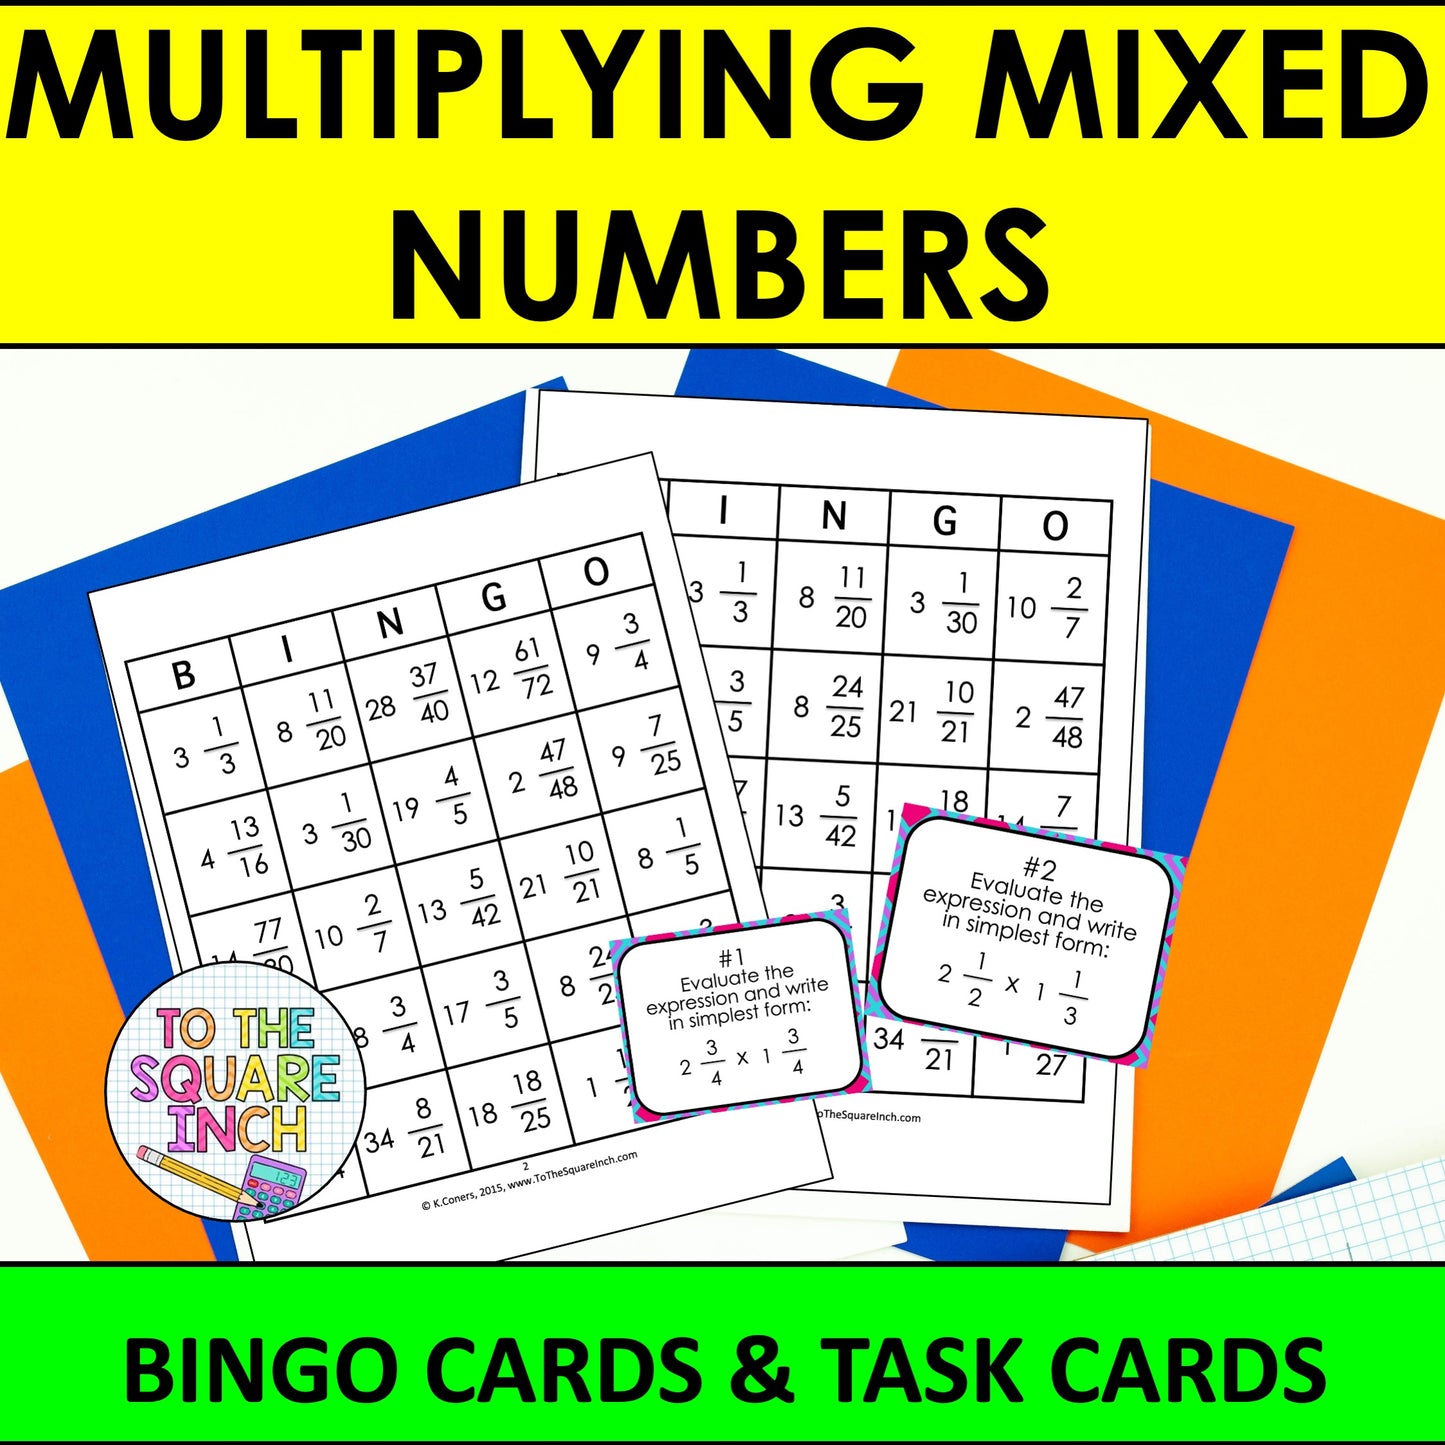 Multiplying Mixed Numbers Bingo Game